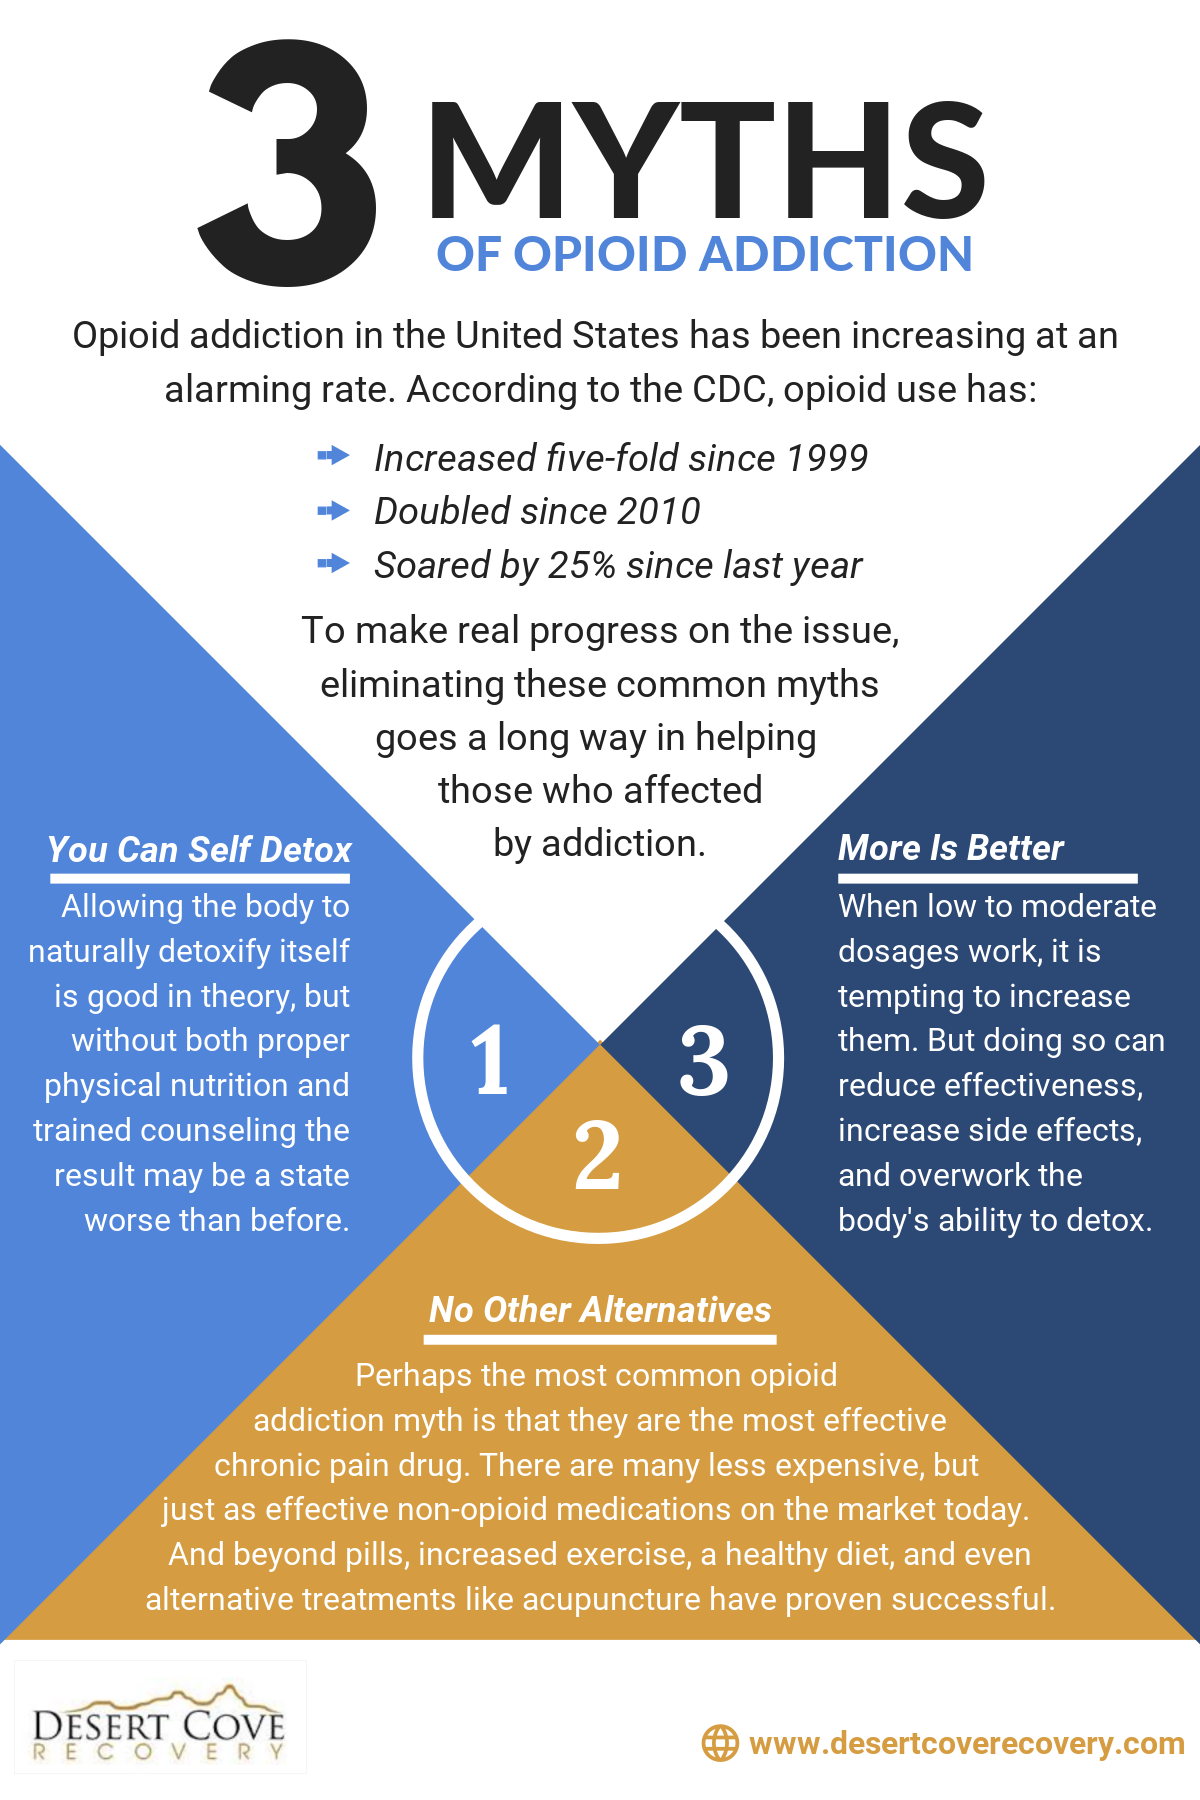 3 myths of opioid addiction